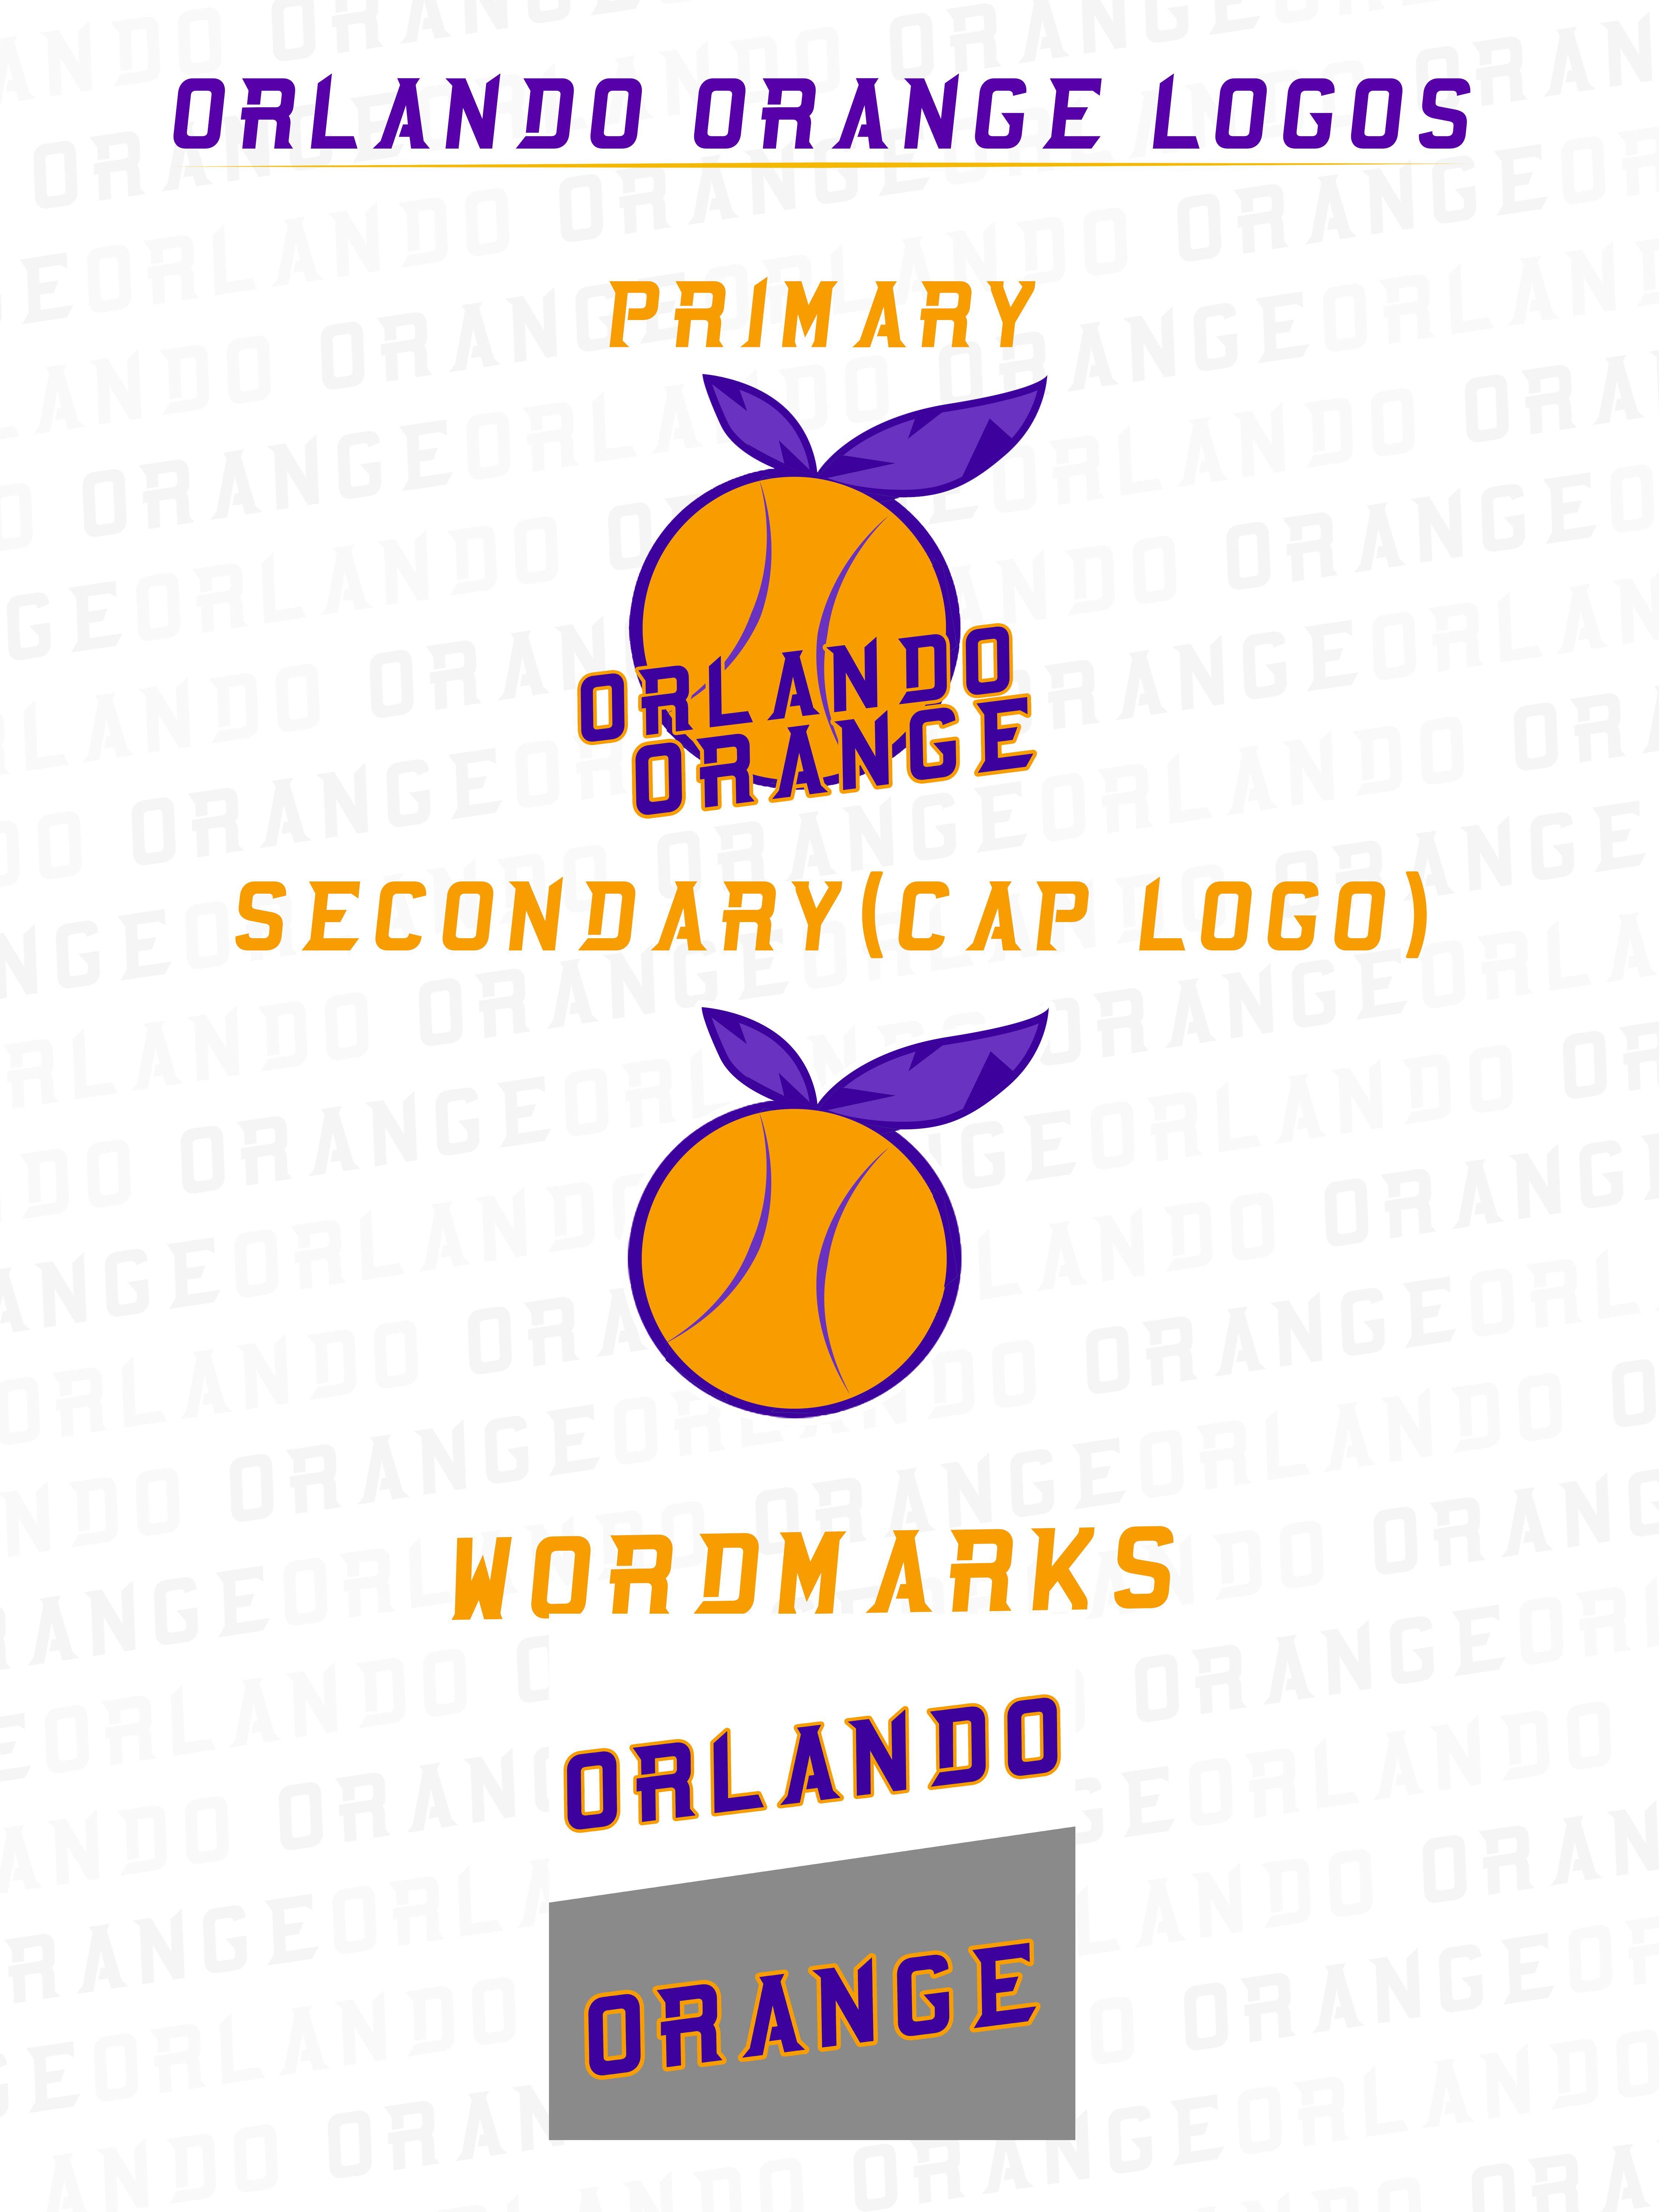 Orlando Orange Logo - National Baseball League - Orlando Orange Final Updates 1/12 ...